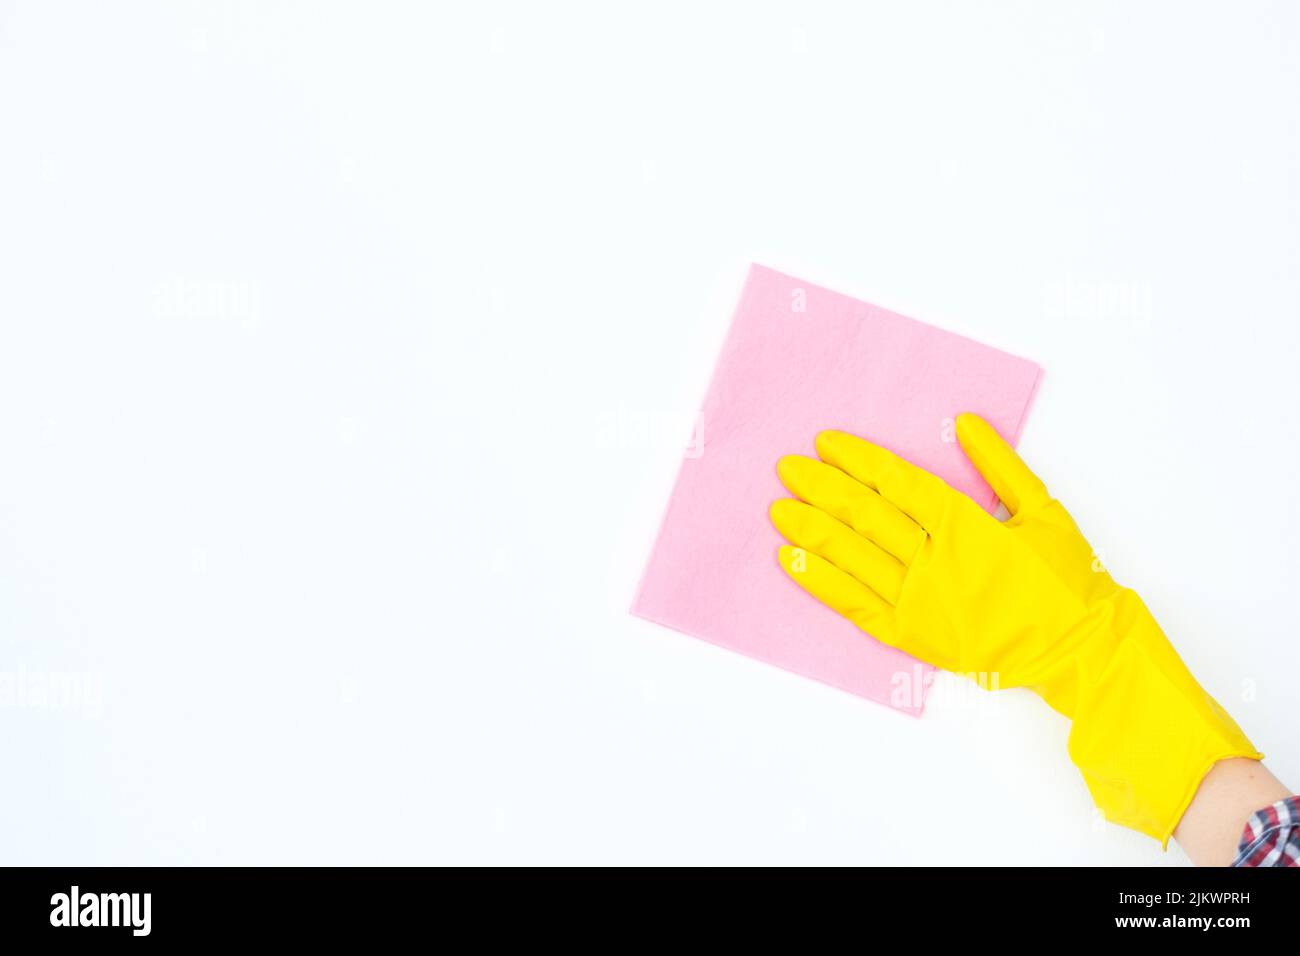 limpieza saneamiento saludable hogar mano guante amarillo Foto de stock